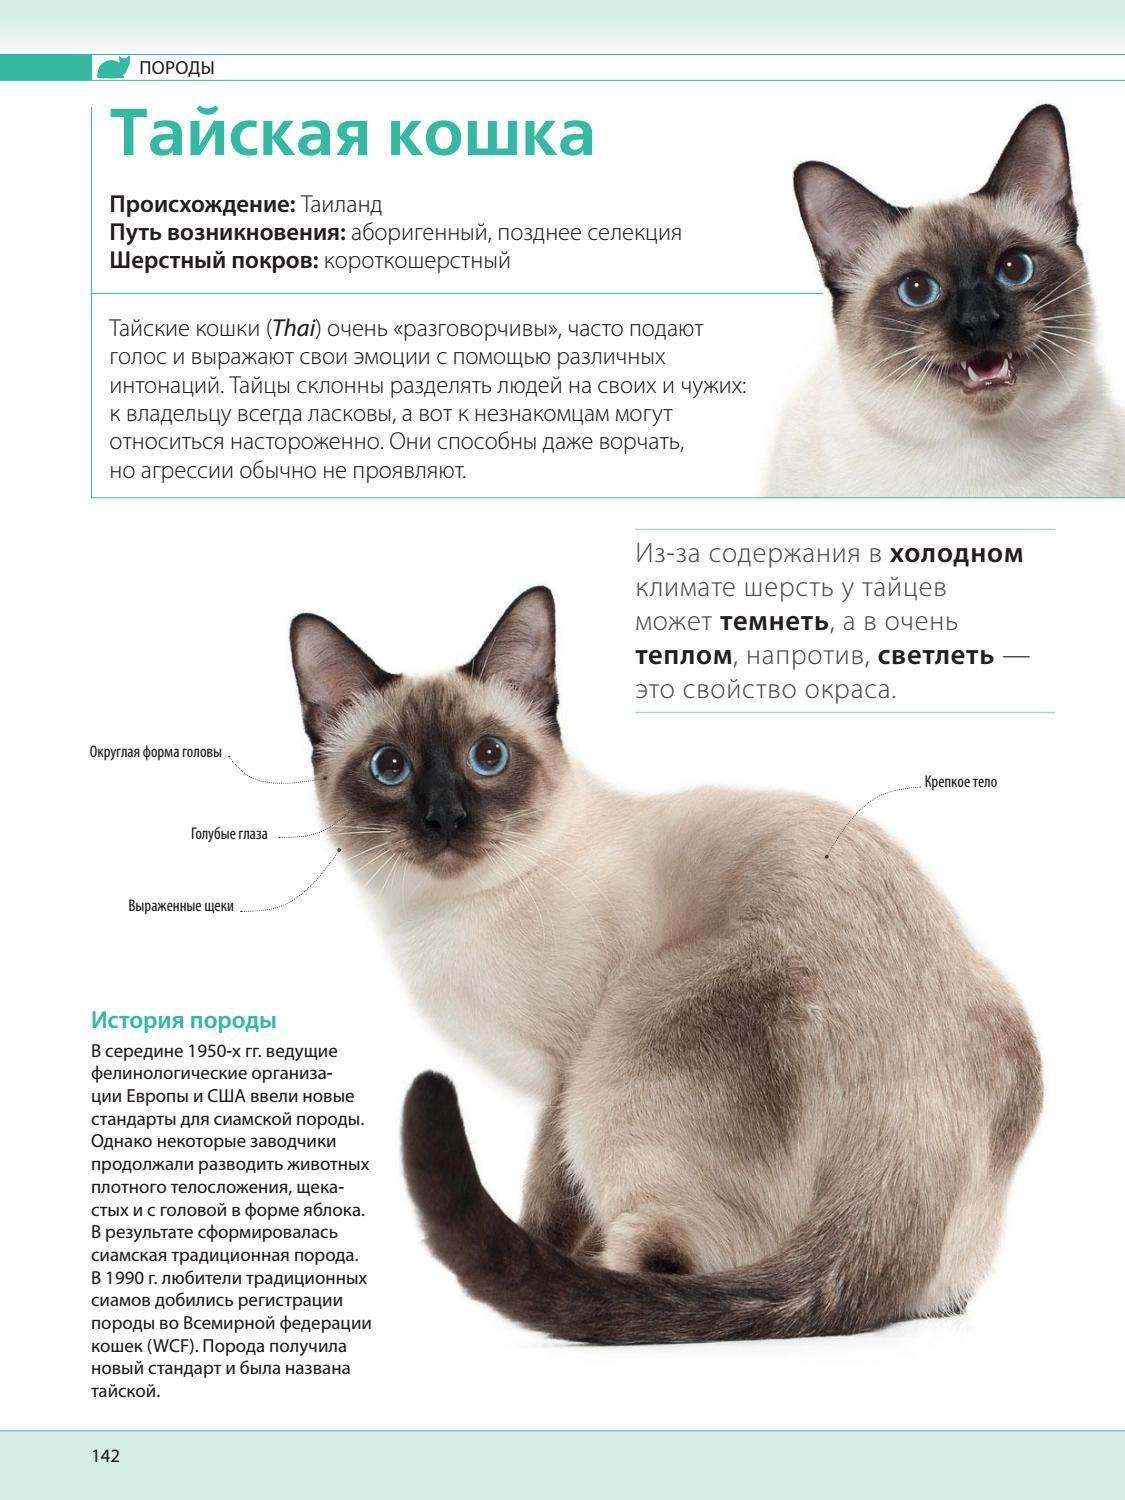 Тайская кошка — описание, стандарт, характер